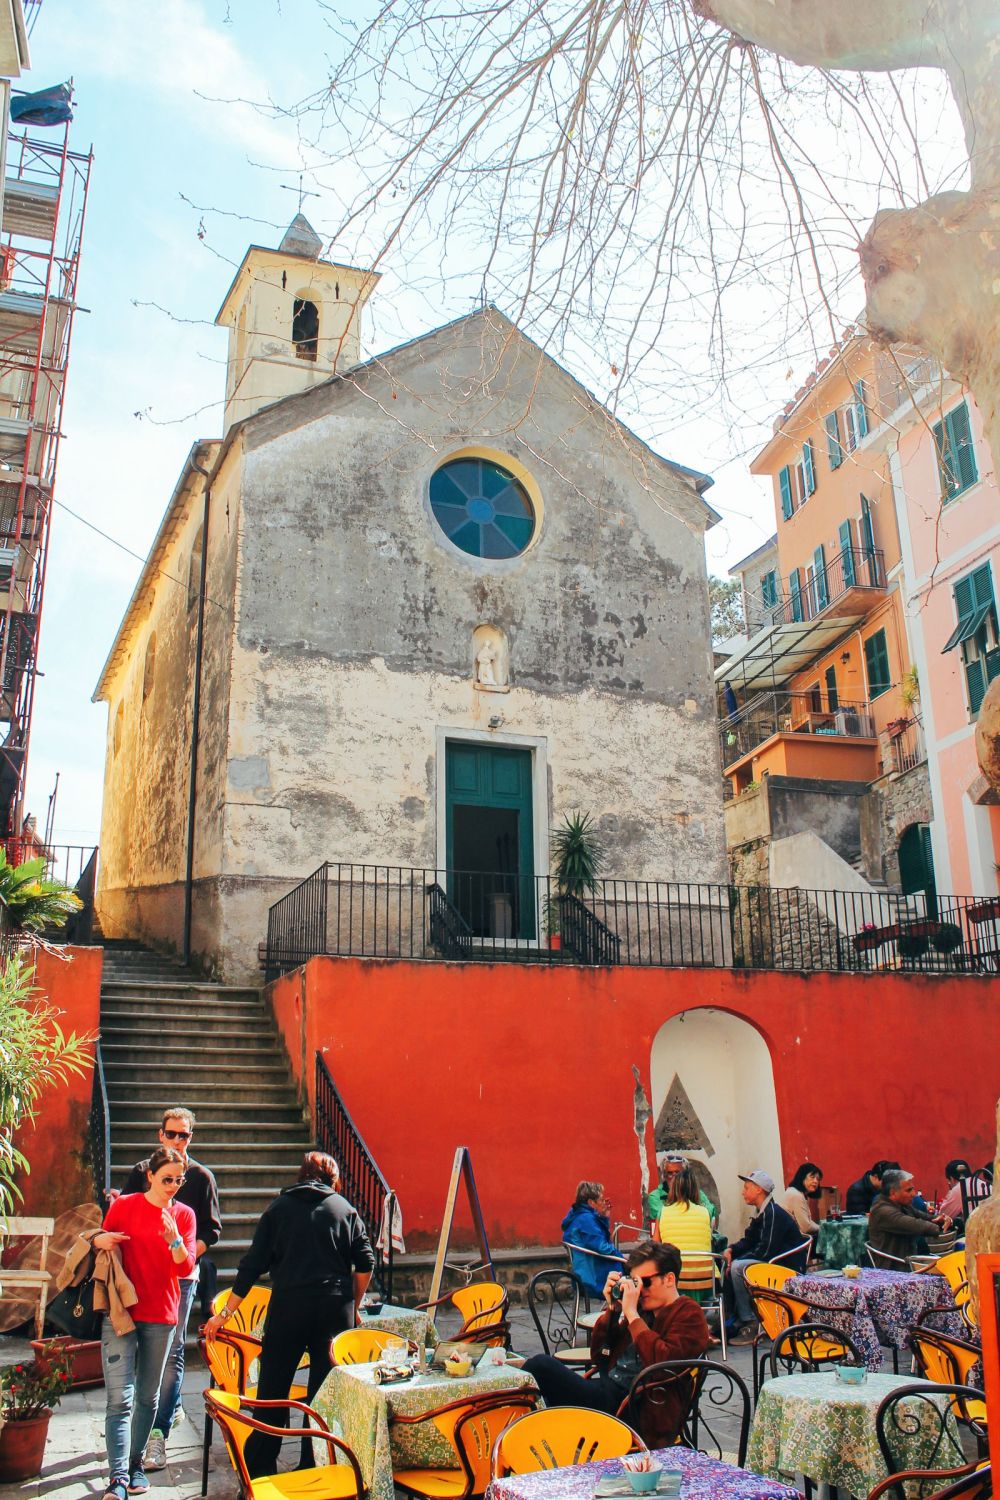 Corniglia in Cinque Terre, Italy - The Photo Diary! [3 of 5] (7)